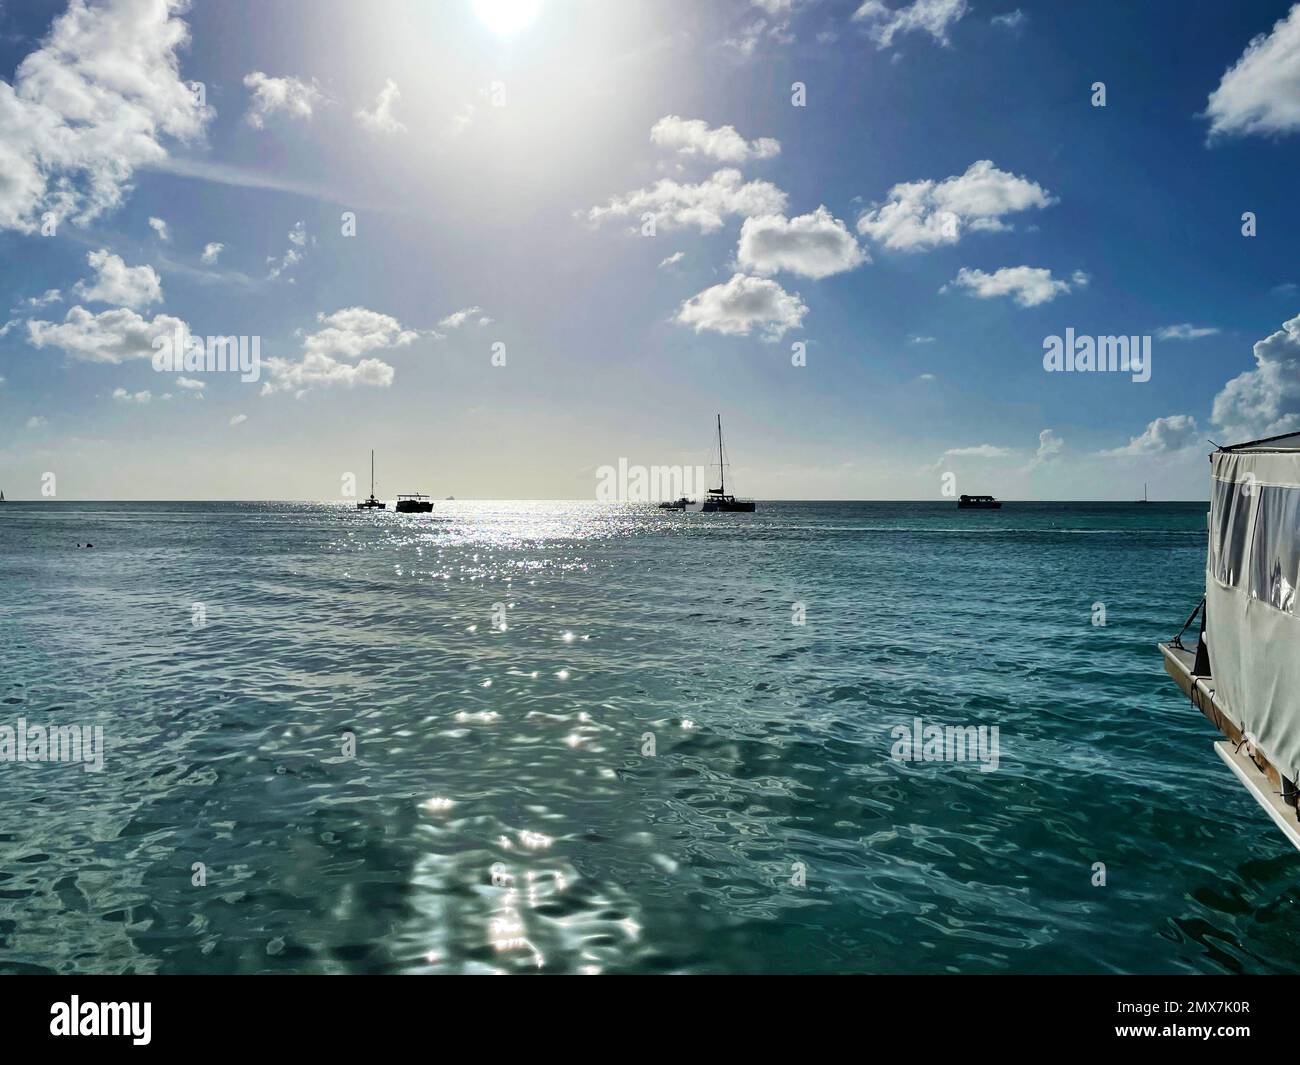 Boats on the Caribbean sea, off the coast of Aruba. Stock Photo